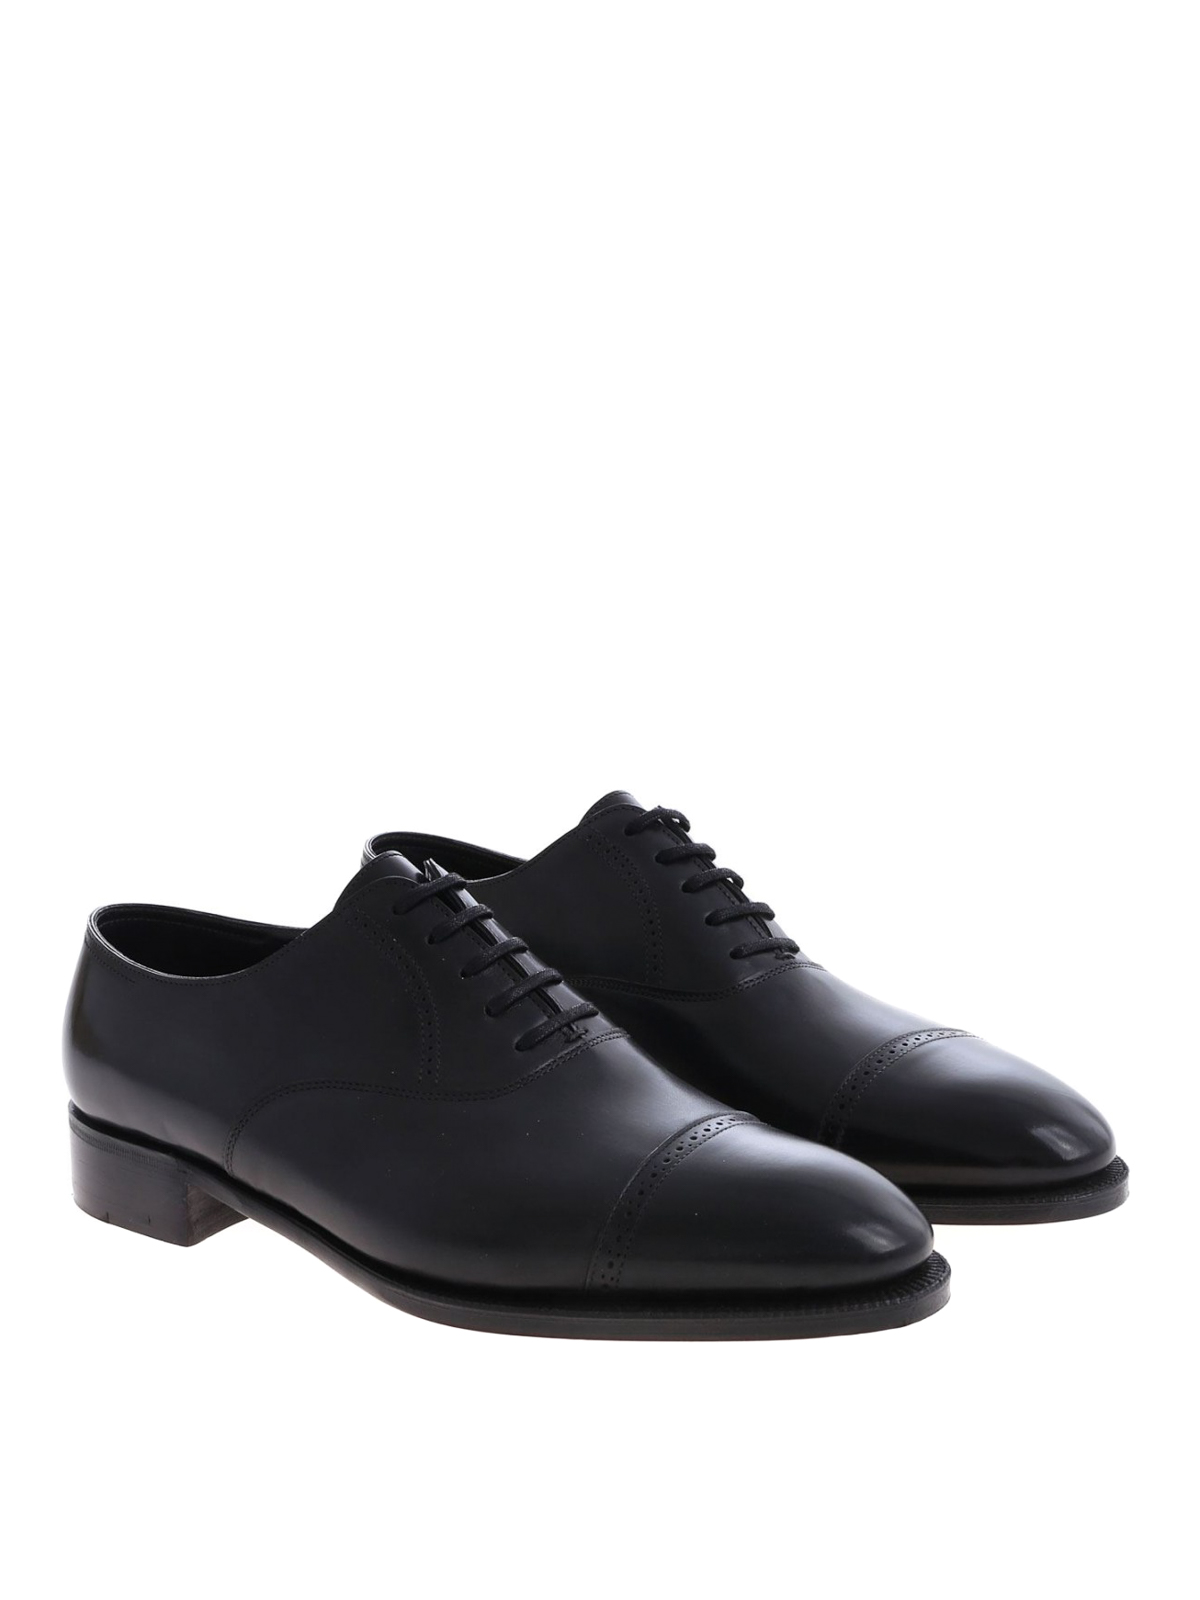 Shop John Lobb Zapatos Clásicos - Philip Ii Oxford In Negro